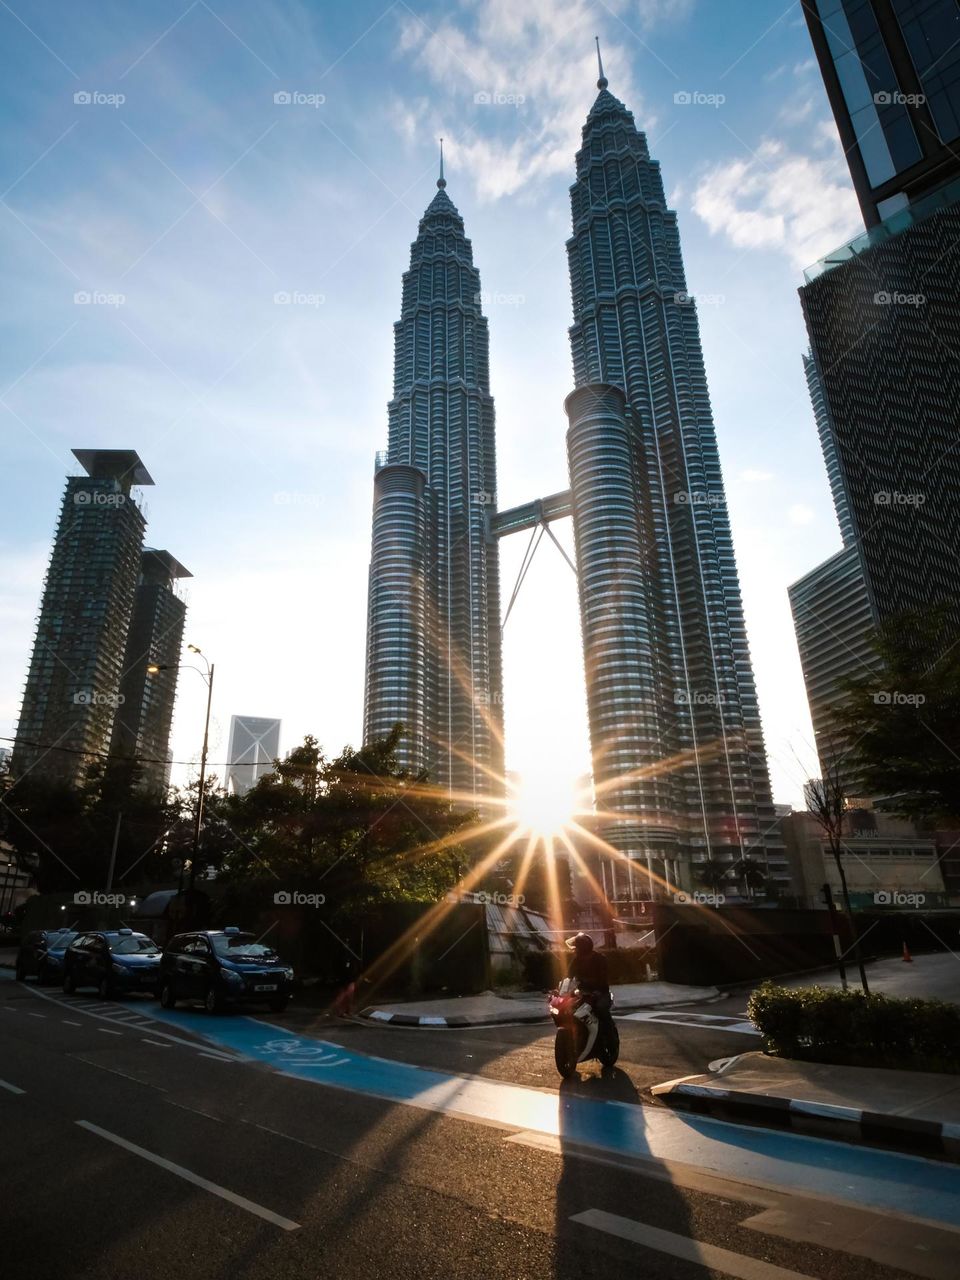 The morning sunrise coming through the base of the Petronas twin towers in Kuala Lumpur, Malaysia